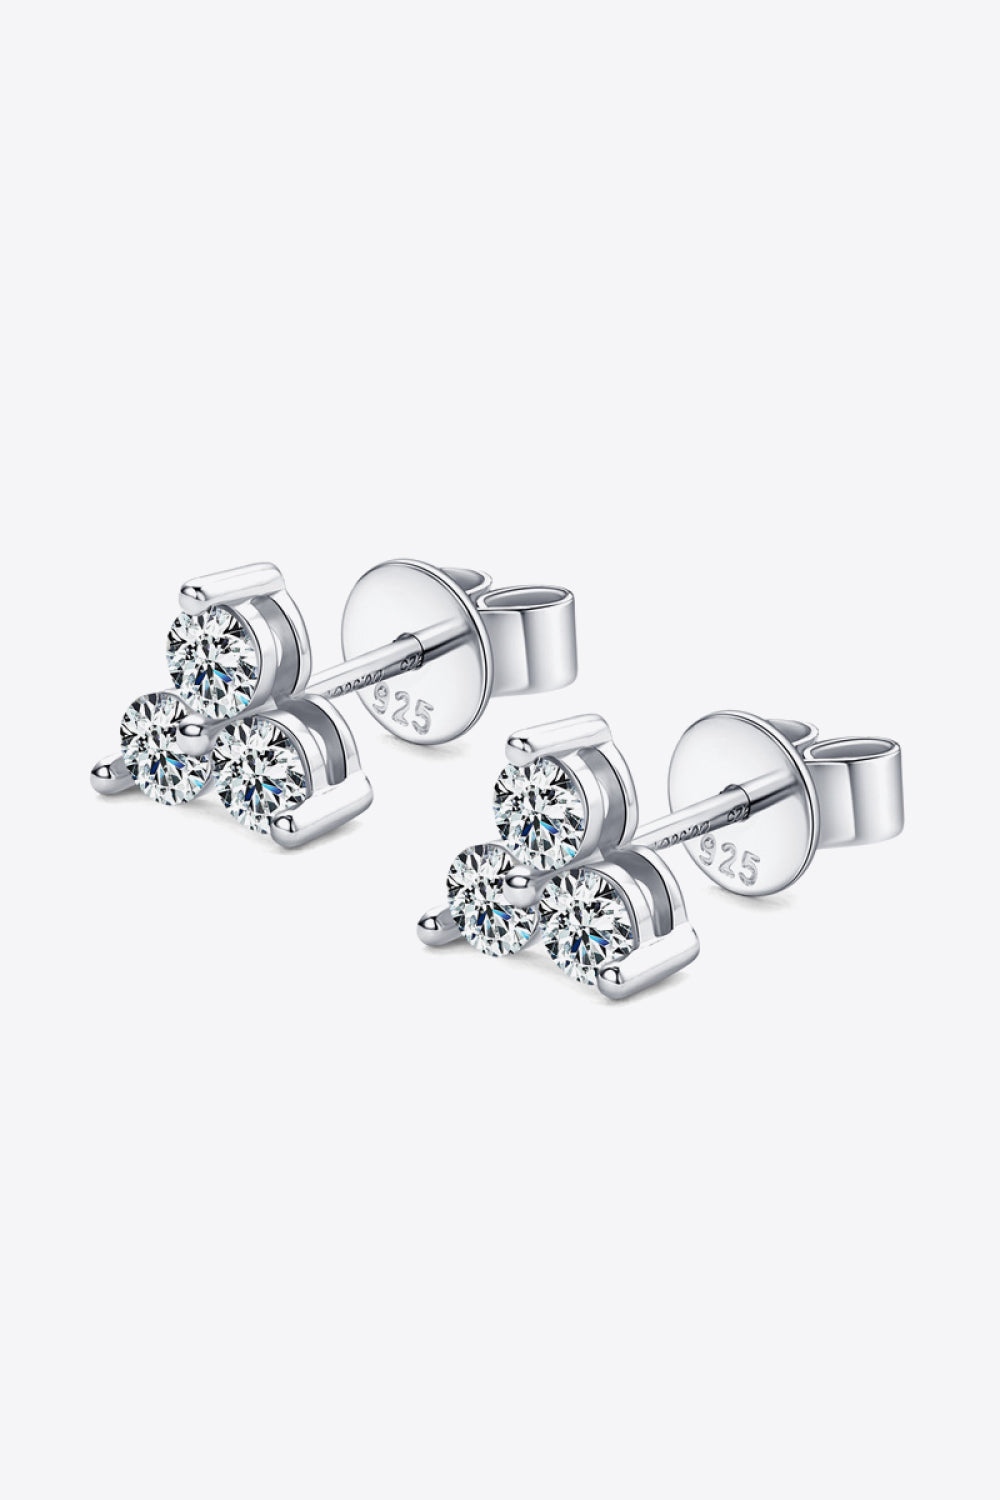 Moissanite 925 Sterling Silver Stud Earrings - bertofonsi